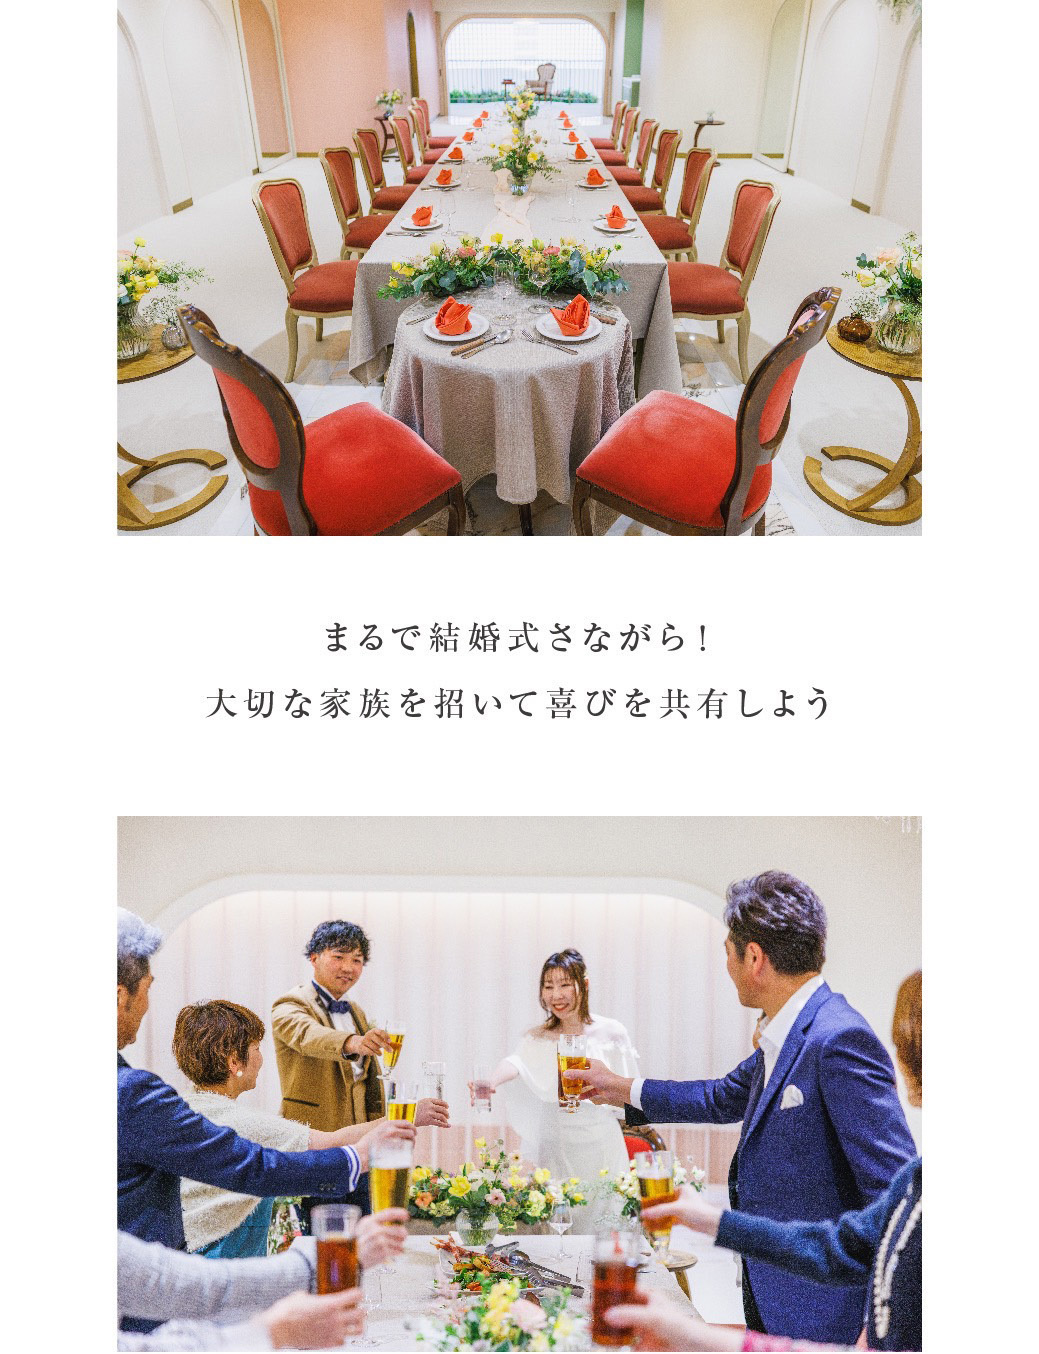 富士市フィーノ記念日の会食プラン